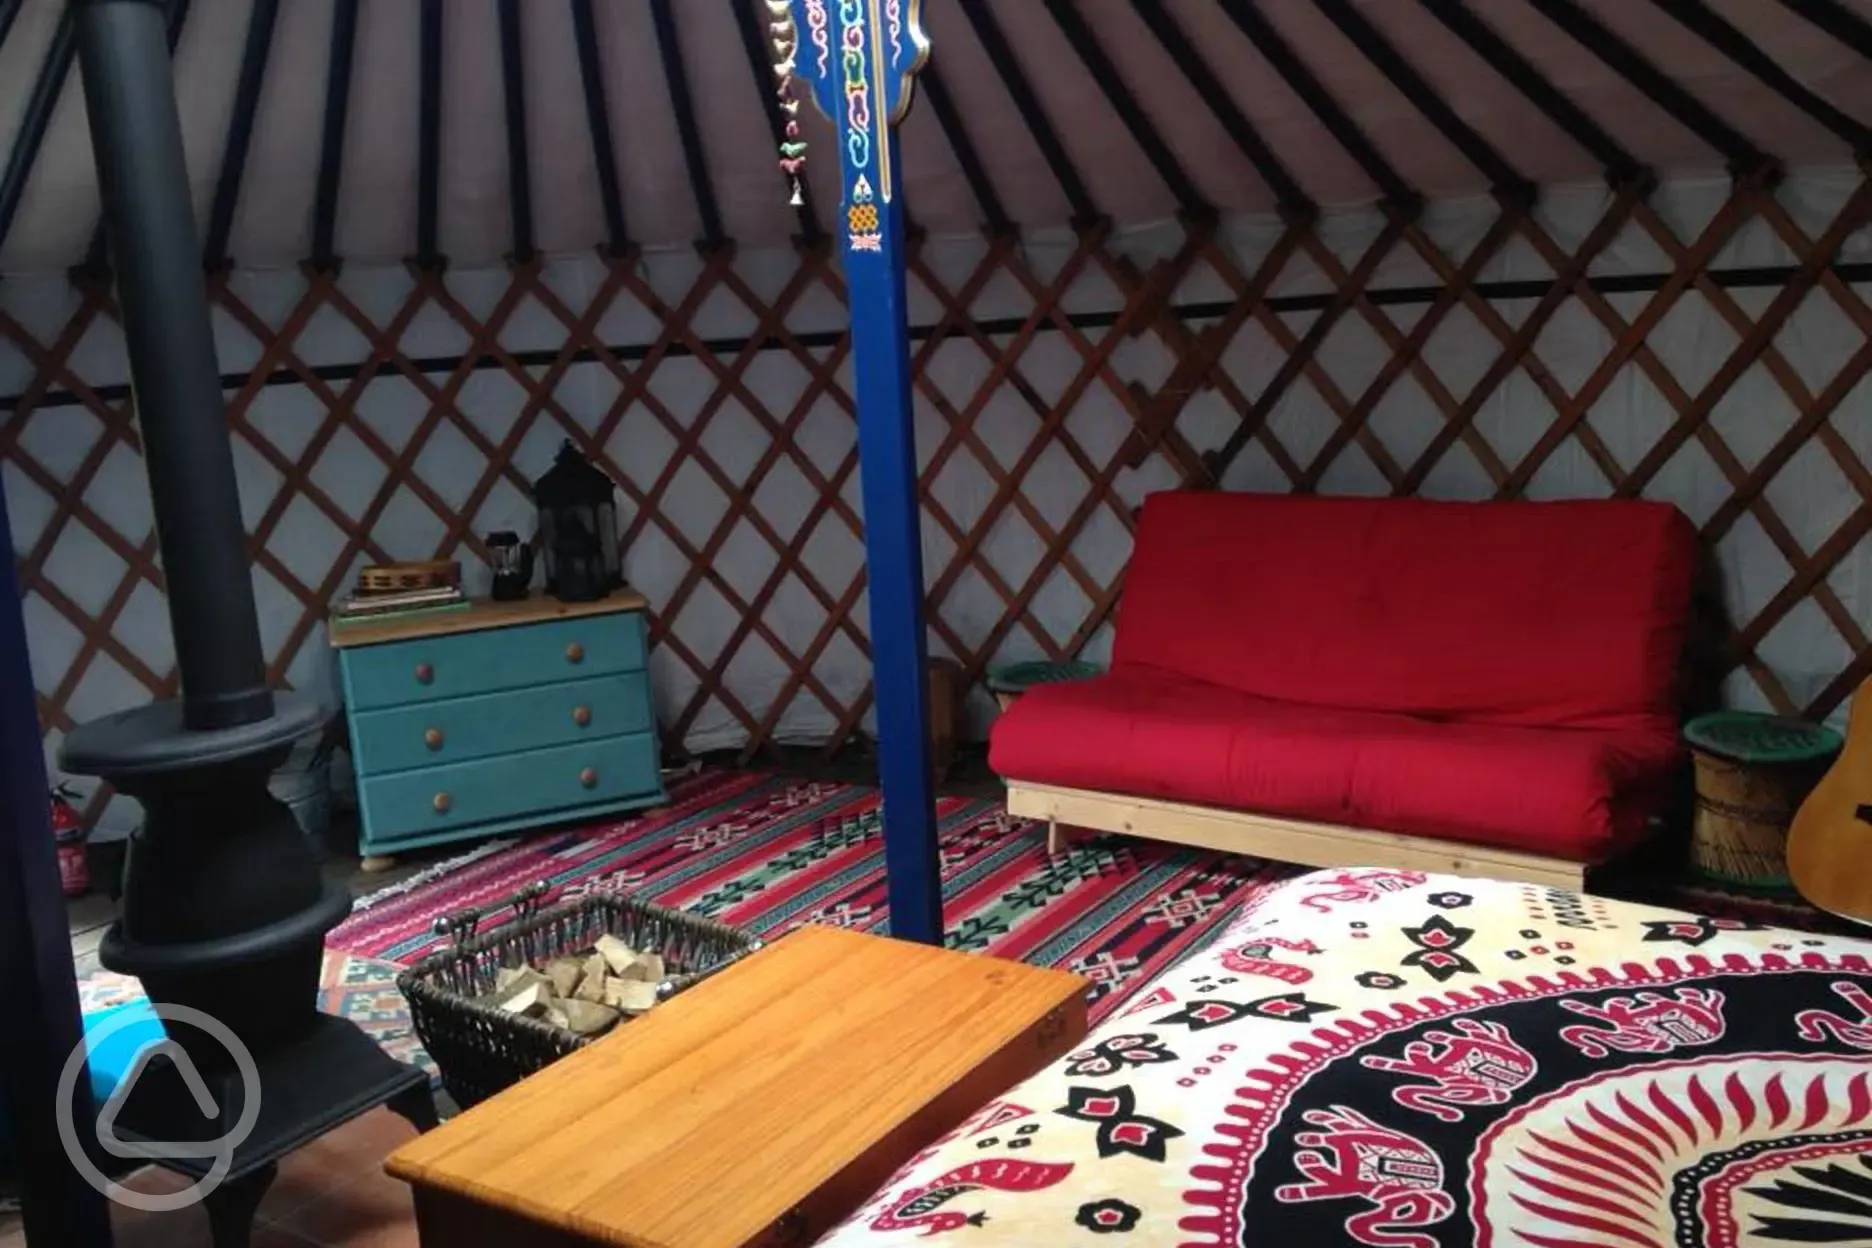 Inside the yurt.